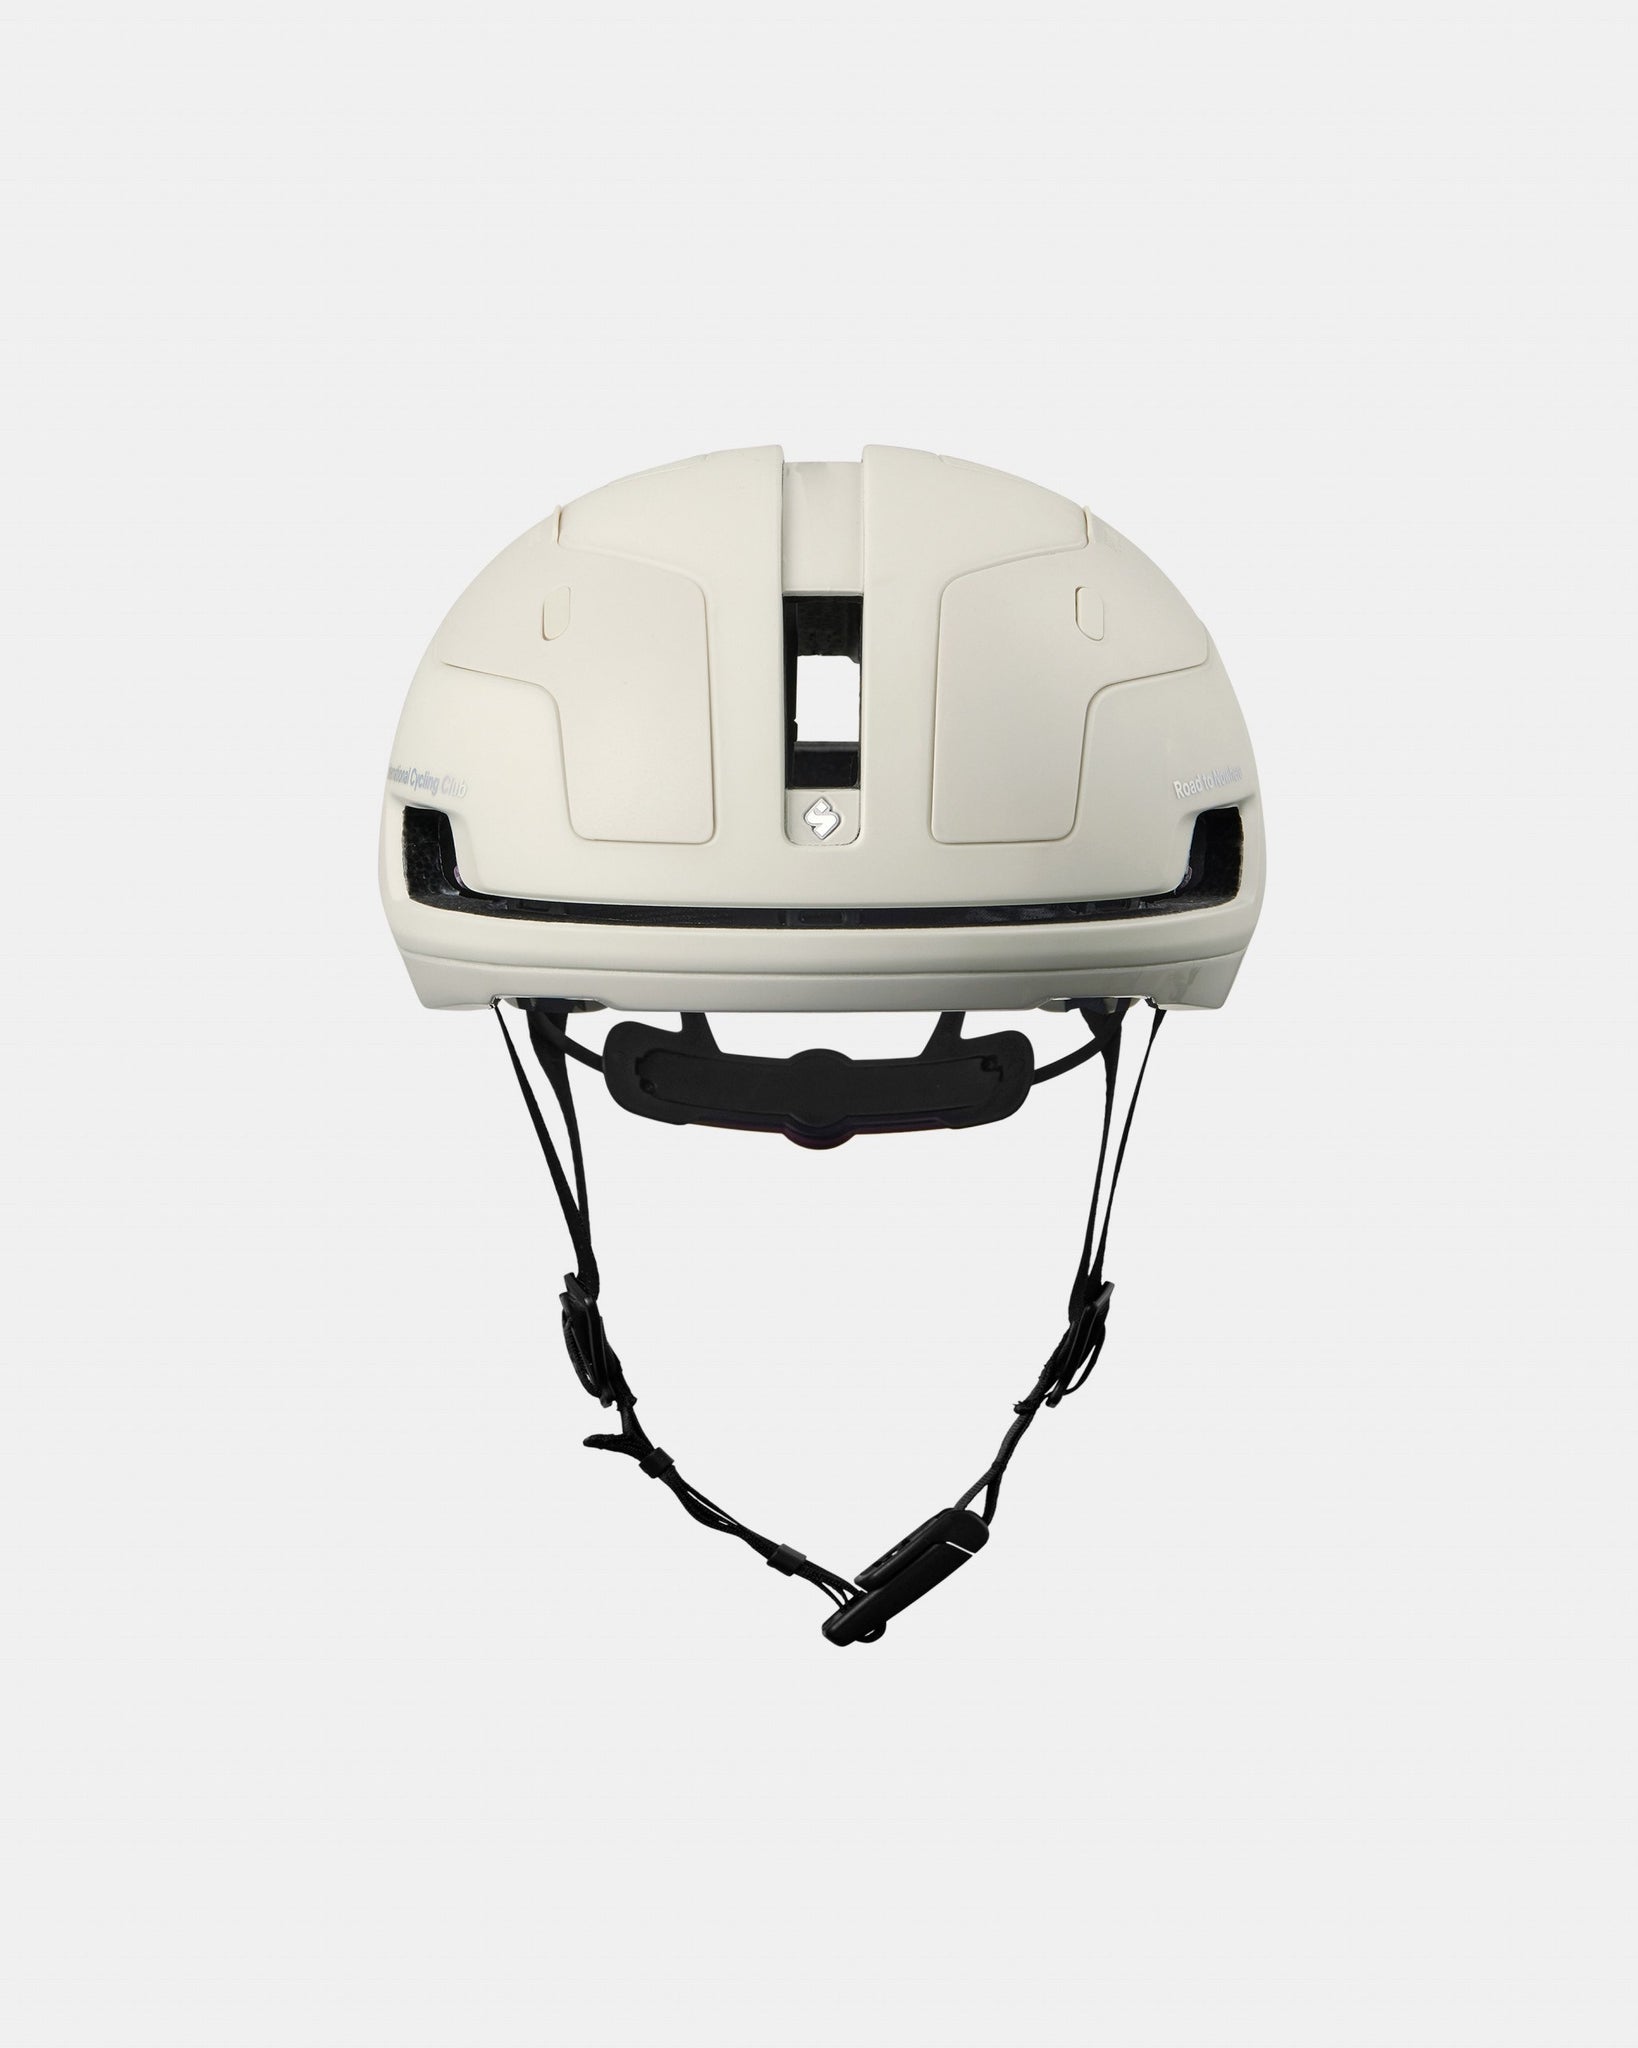 Falconer Aero 2Vi MIPS PNS Helmet